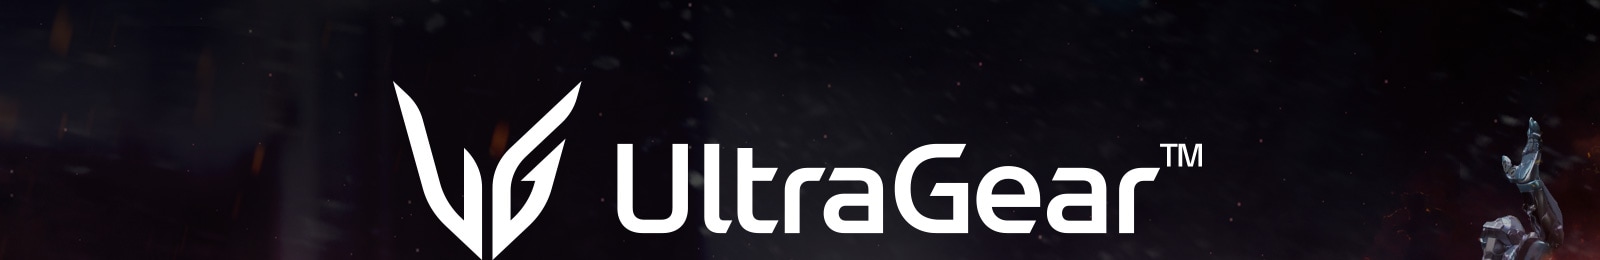 LG UltraGear Logosu.